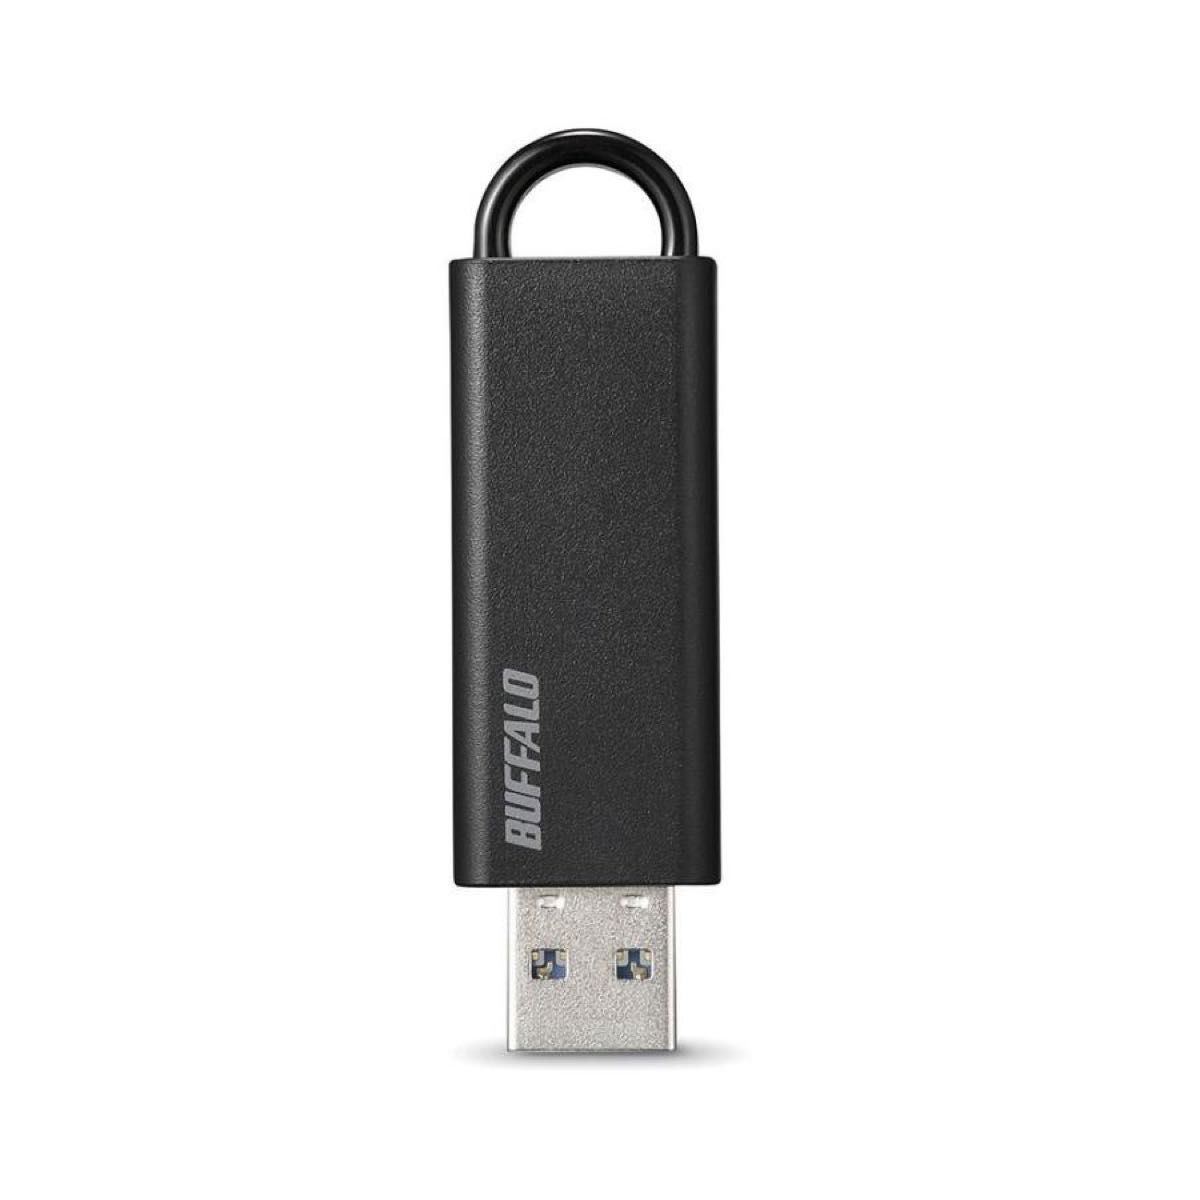 BUFFALO ノックスライド USB3.1 Gen1 USBメモリー 32GB ブラック RUF3-KS32GA-BK